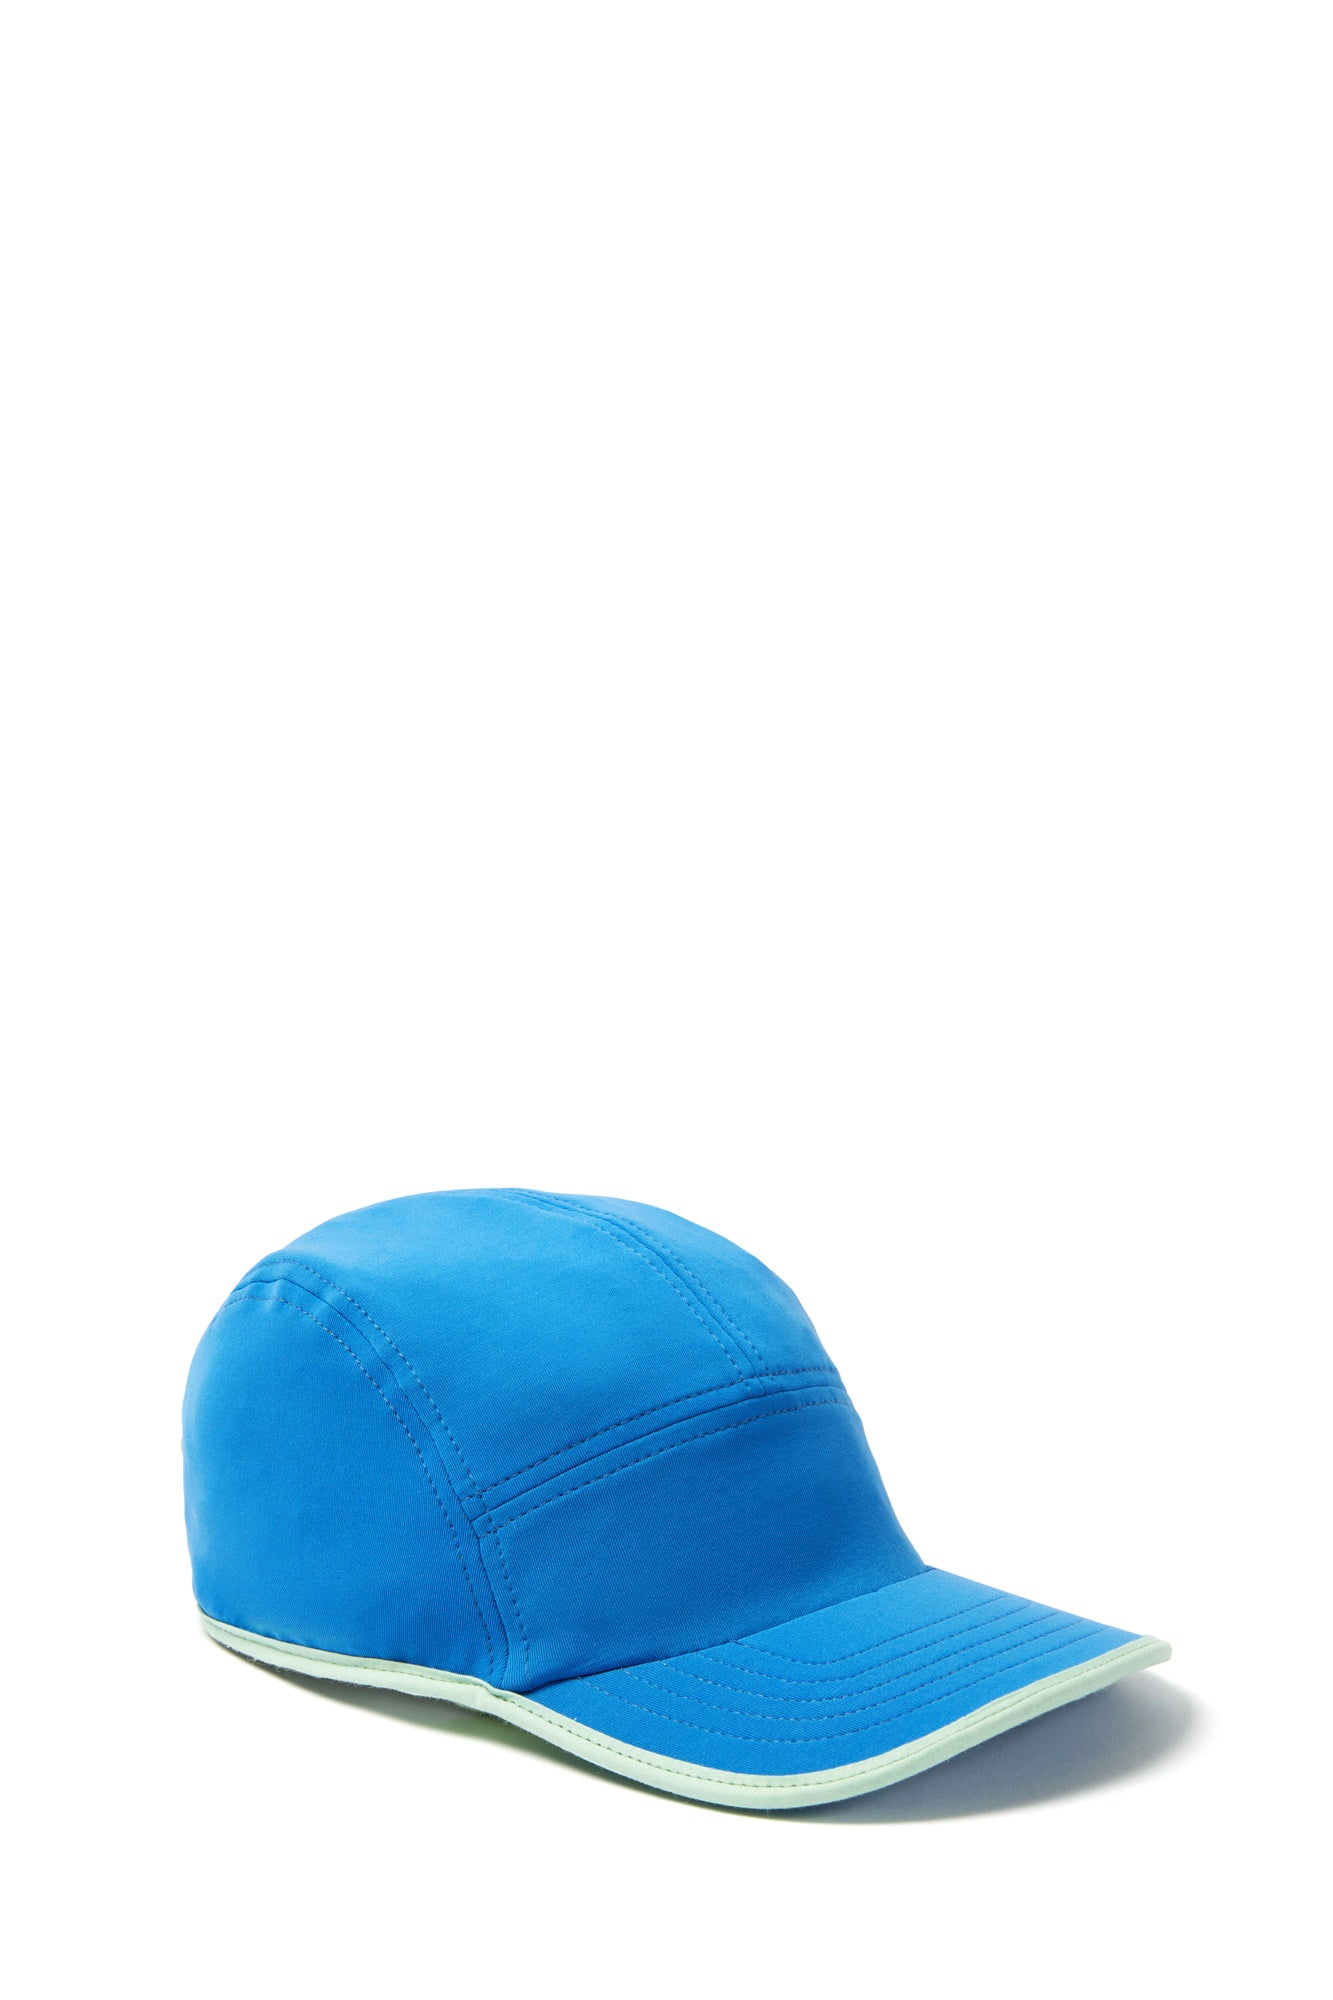 SUPER STRETCH BASEBALL CAP / blue